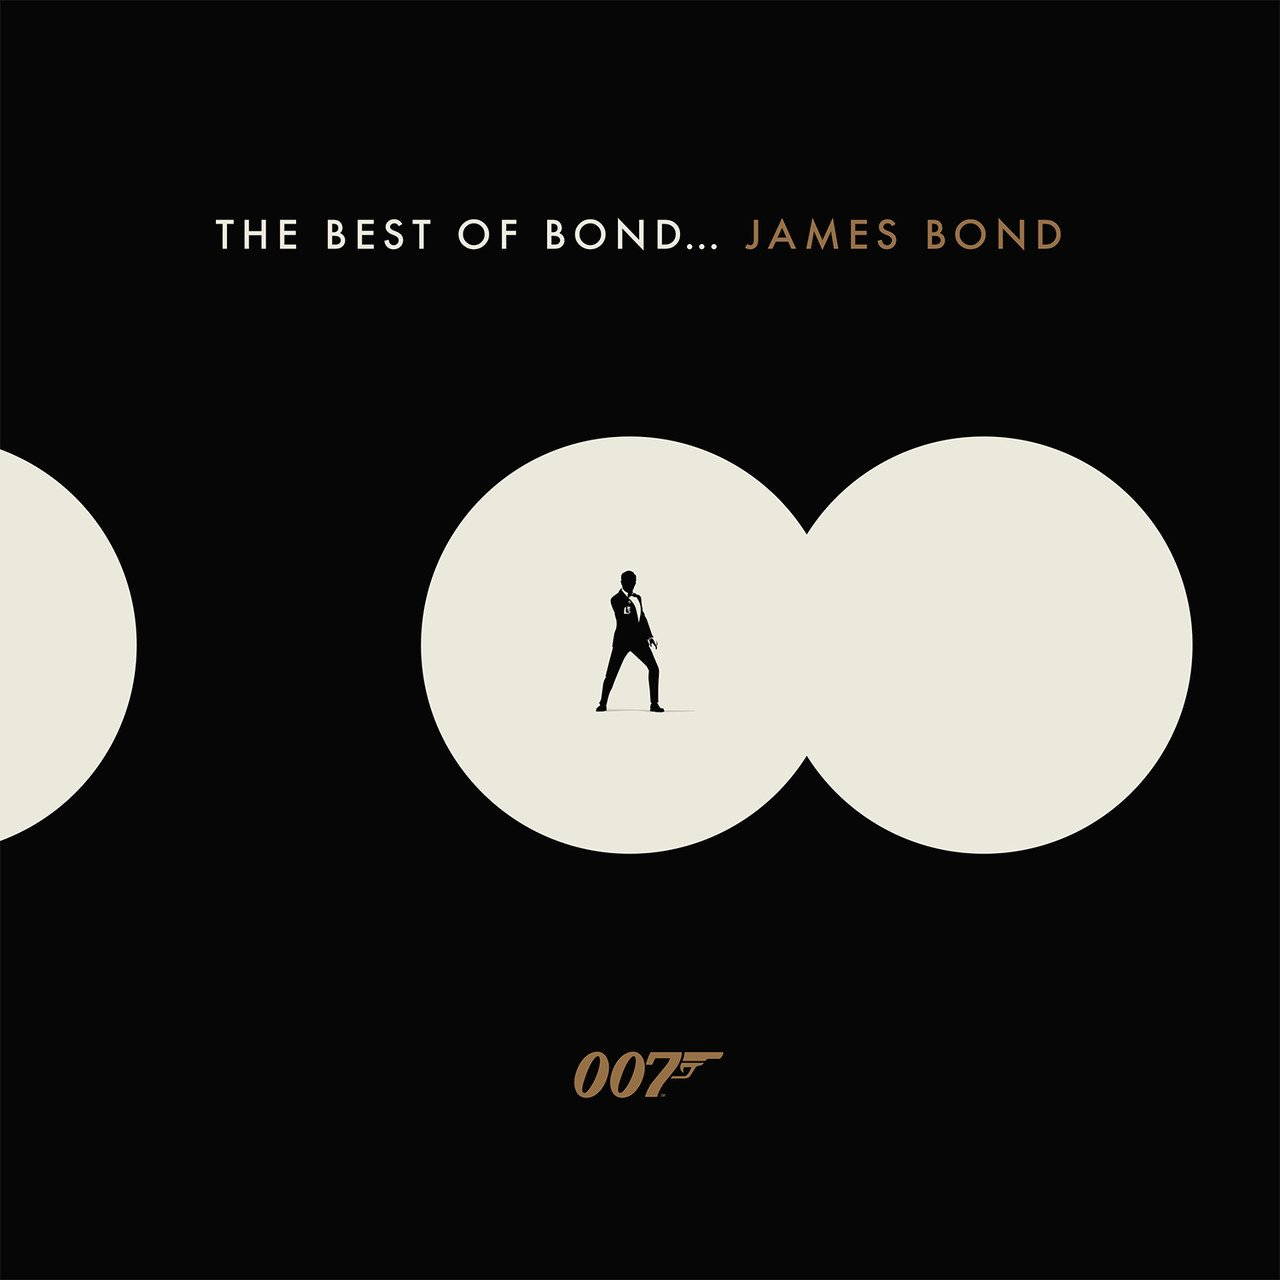 Саундтрек UME (USM) The Best Of Bond...James Bond приходный кассовый бланк attache